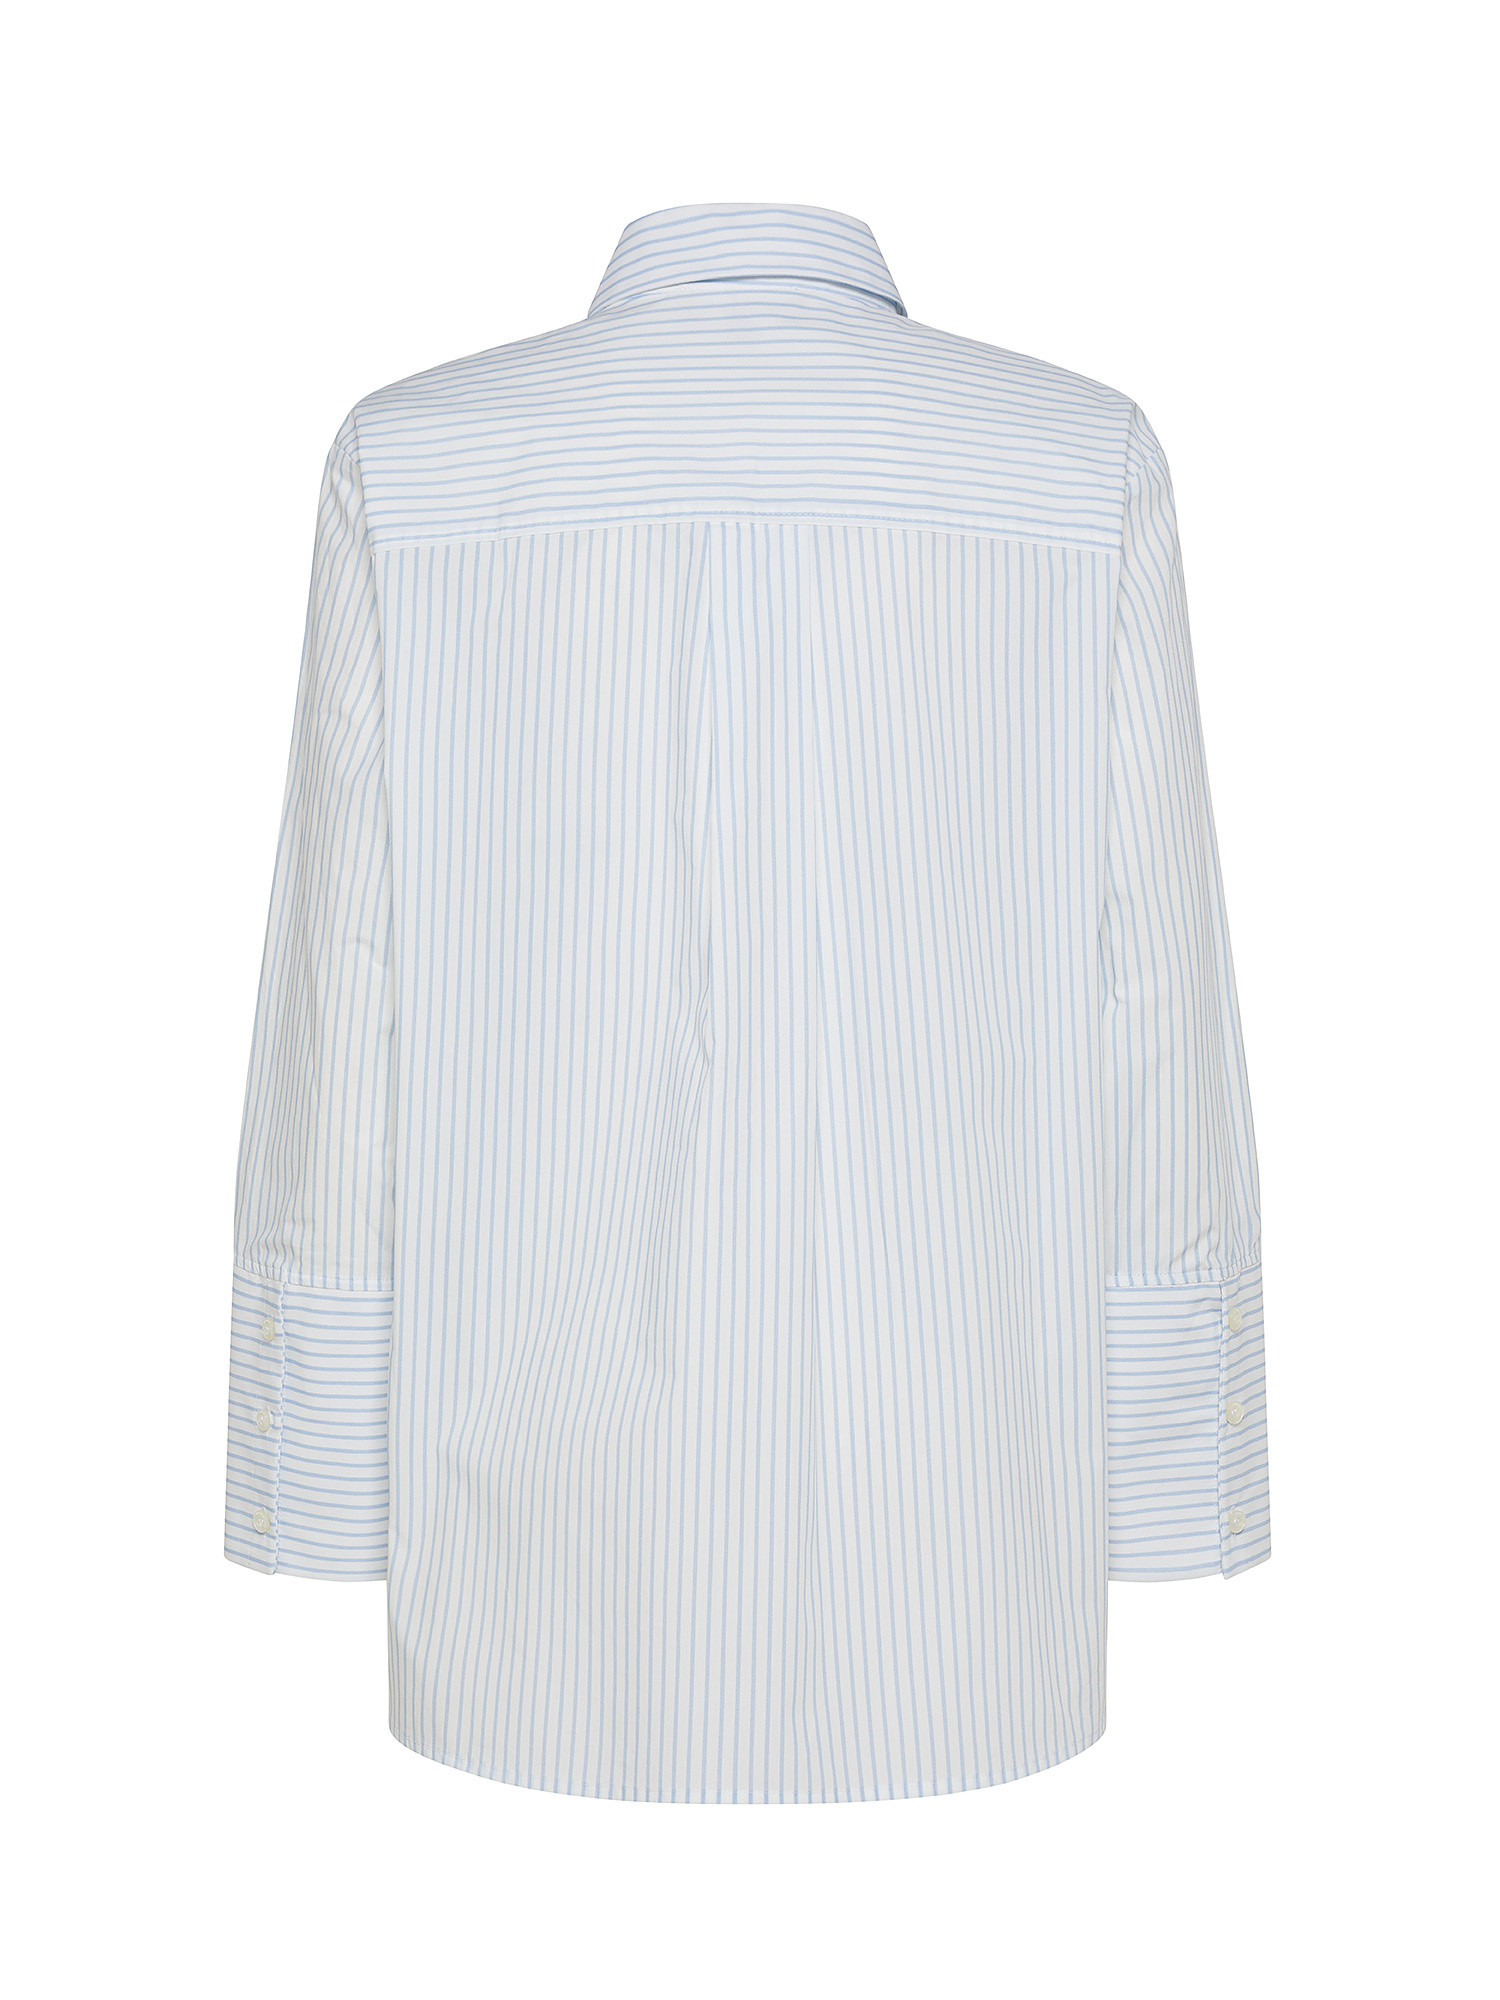 Emporio Armani - Camicia a righe in cotone, Bianco, large image number 1